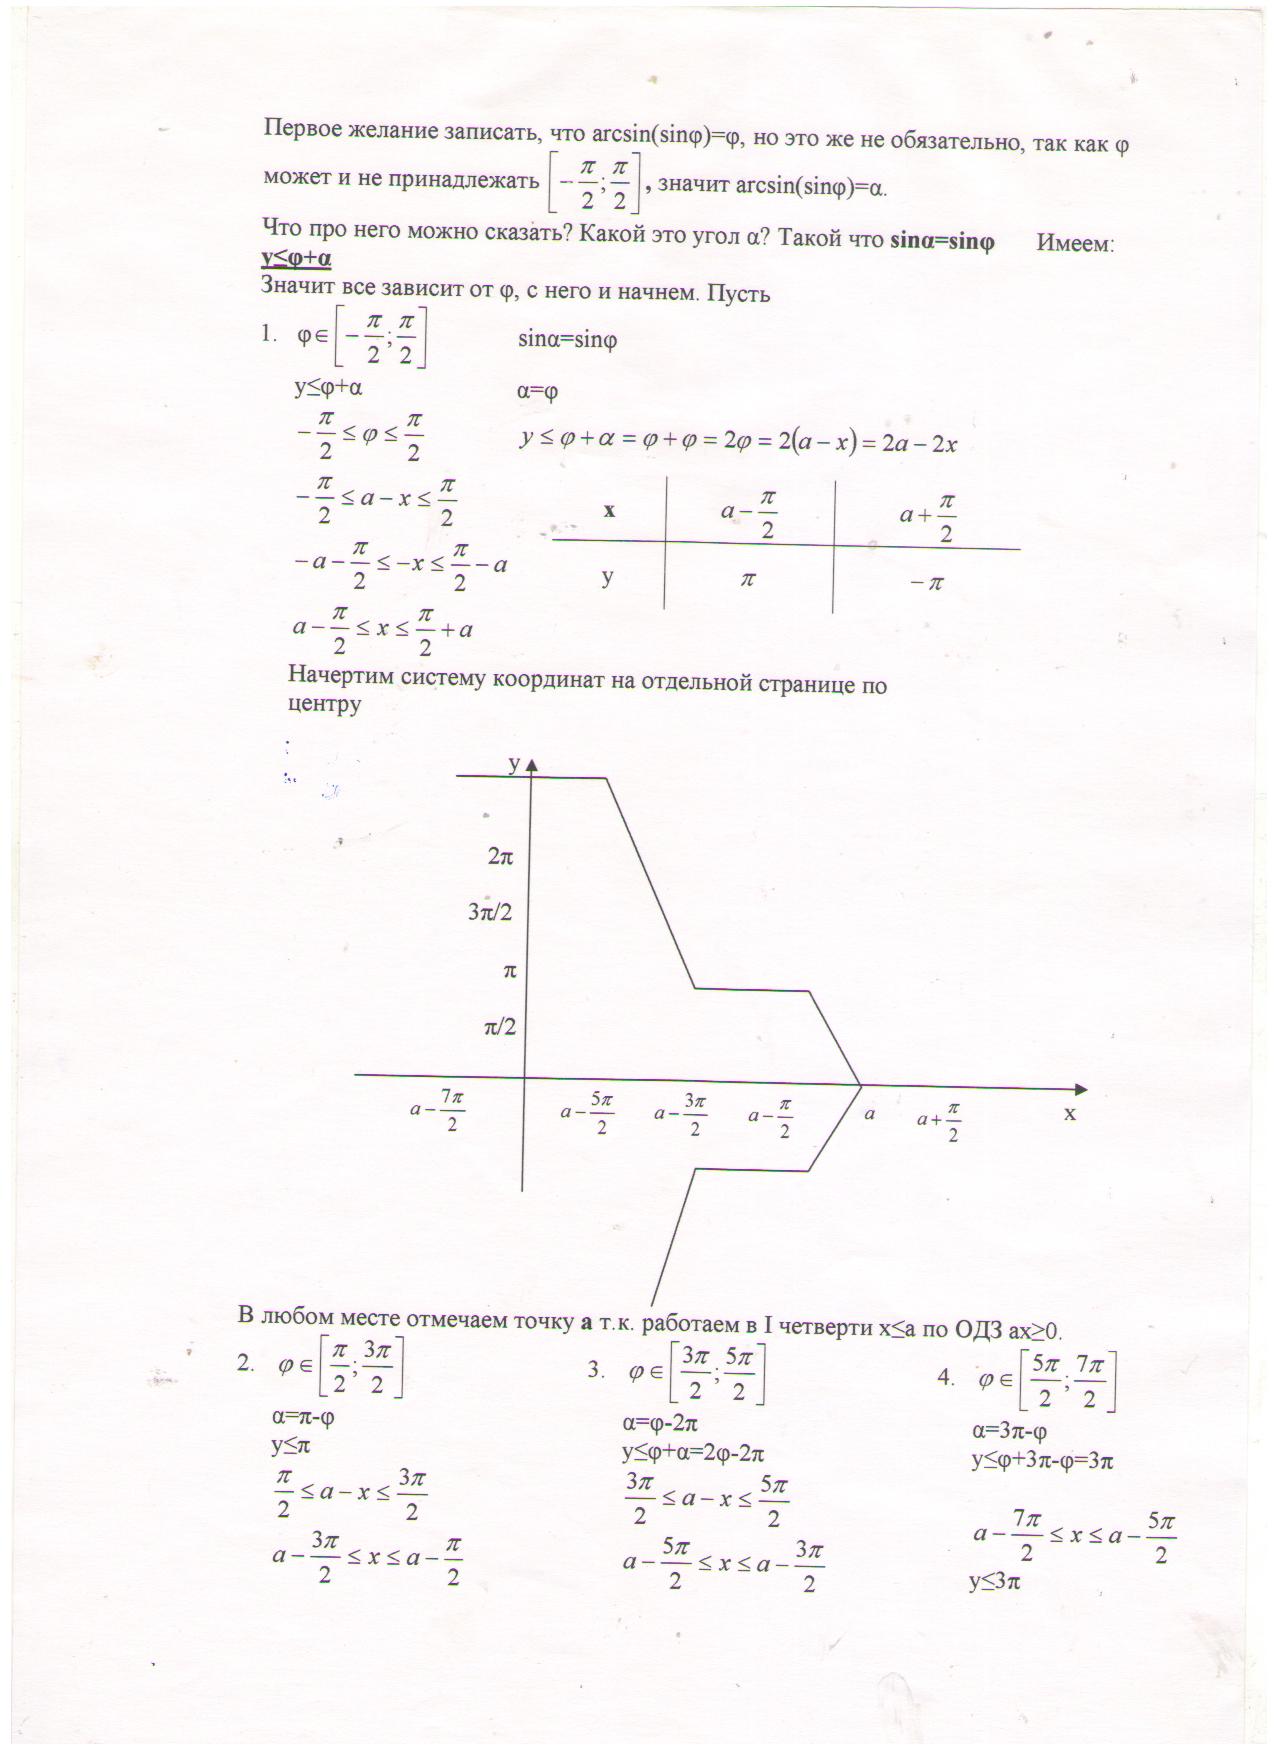 Использование основных свойств обратных тригонометрических функций для решения задач на коородинатной плоскости